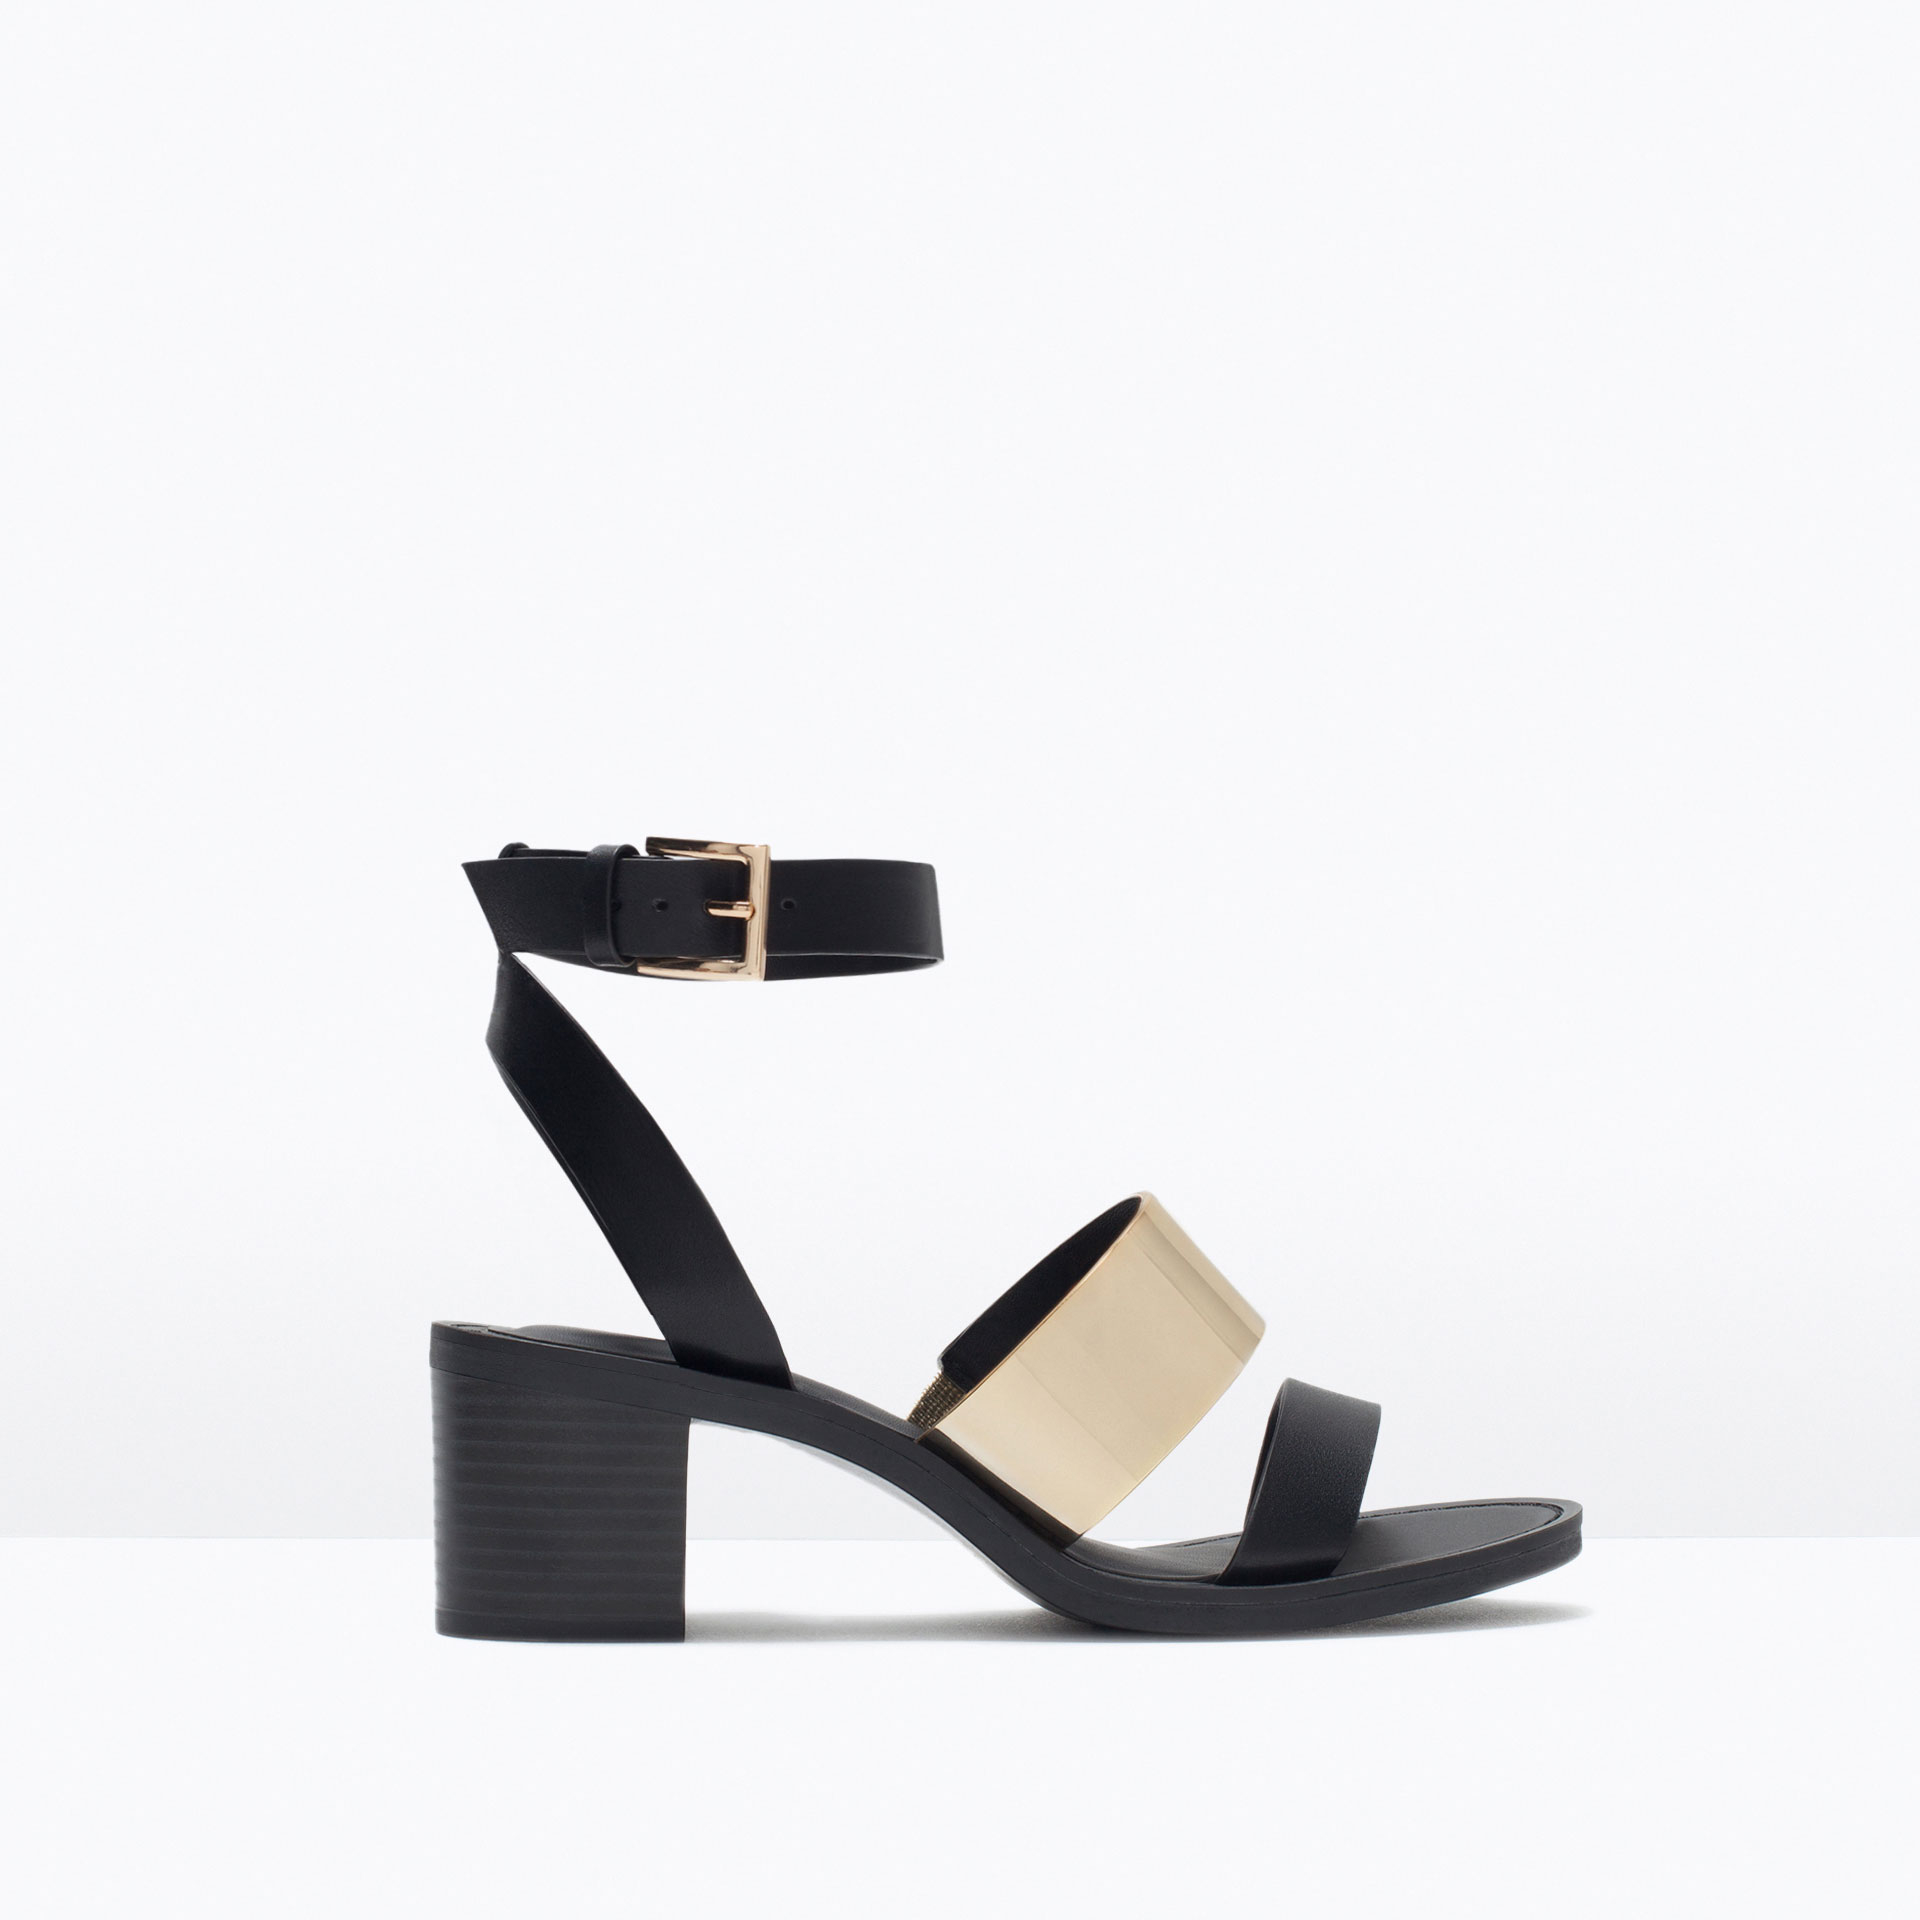  Zara  Block Heel Sandals  With Metallic Detail in Black Lyst